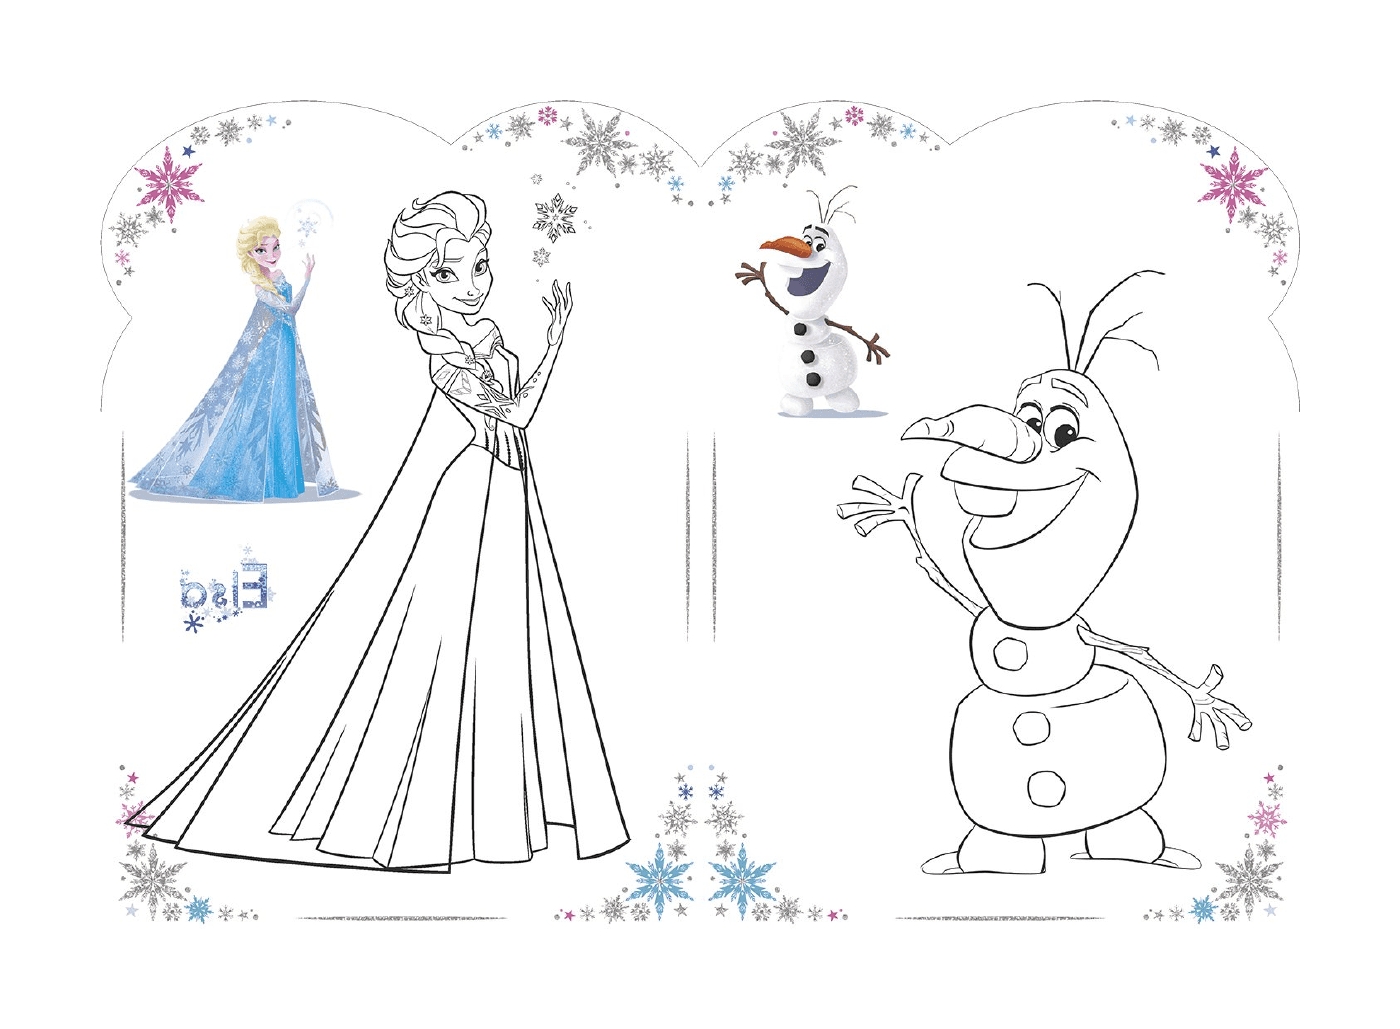  Olaf e Elsa pela Rainha da Neve da Disney em 2018 